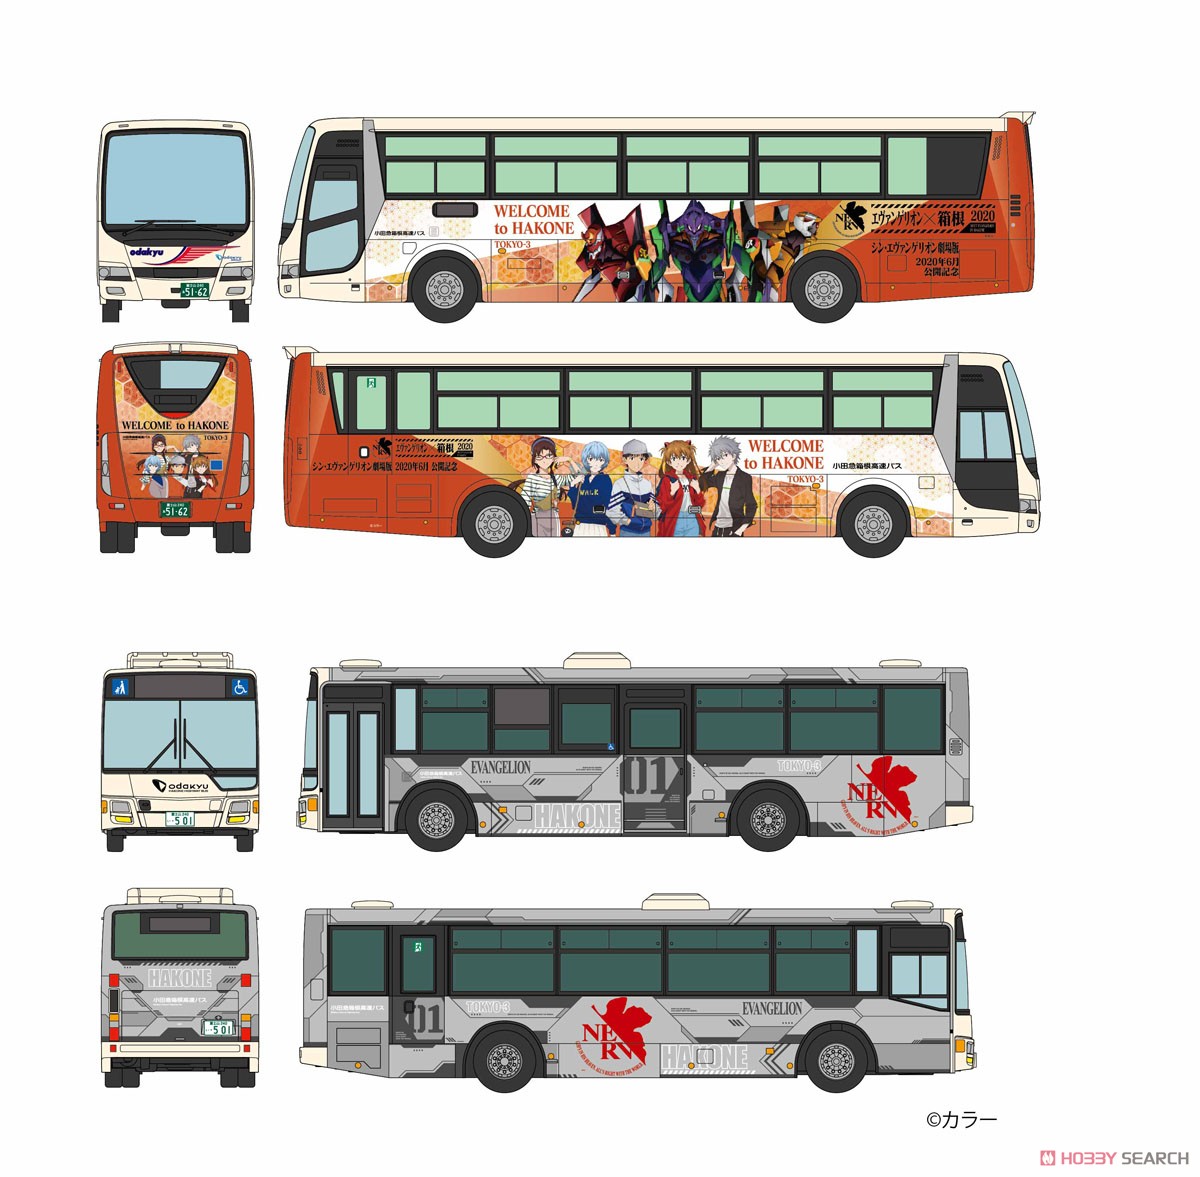 ザ・バスコレクション『小田急箱根高速バス エヴァンゲリオンラッピング2台セット』1/150 Nゲージ-002